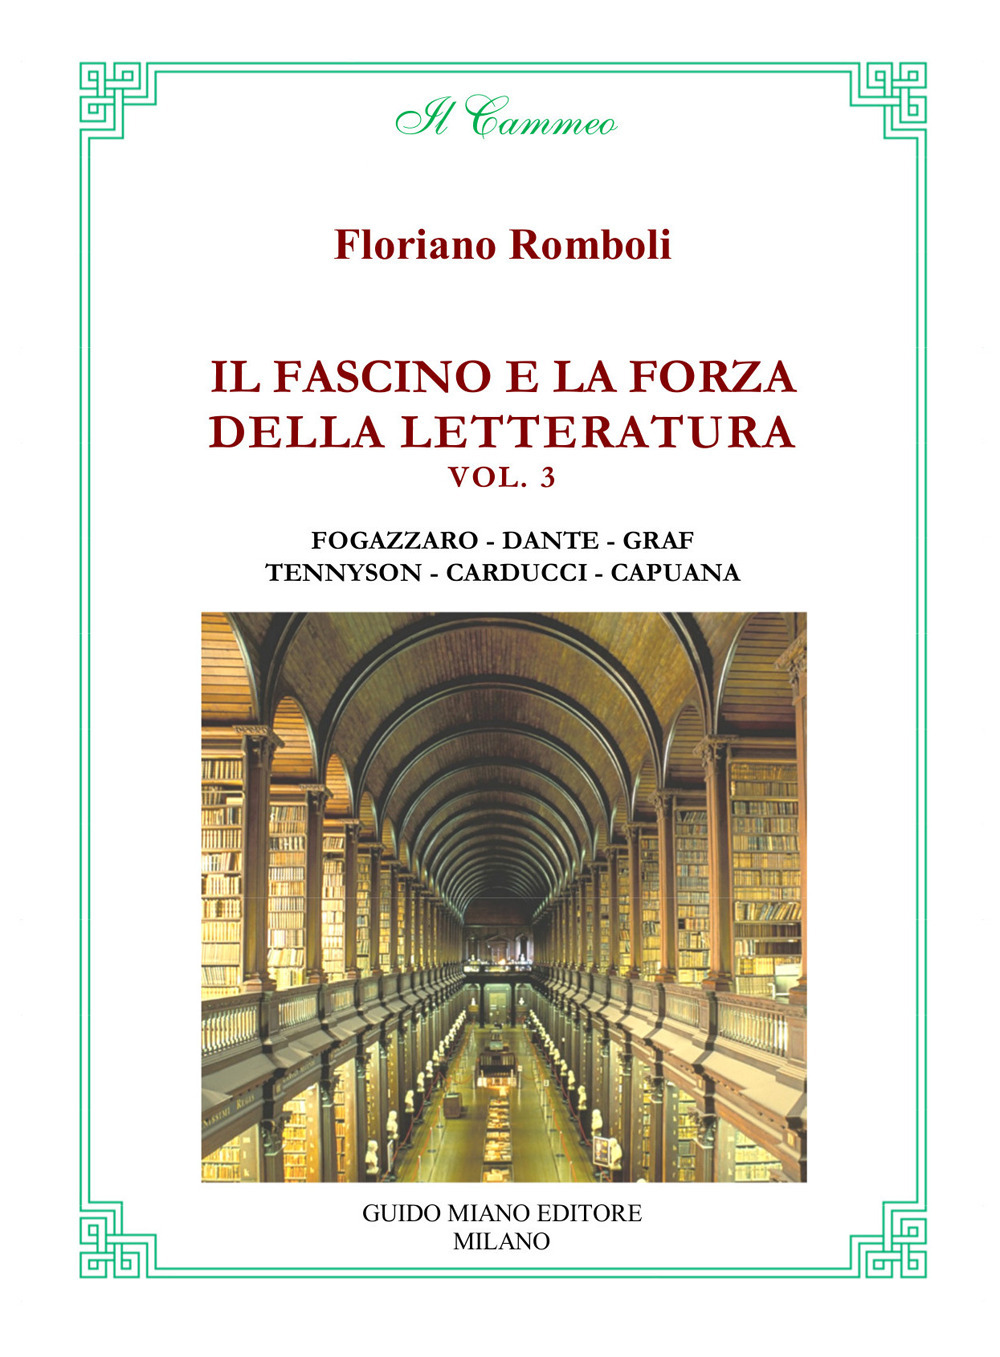 Il fascino e la forza della letteratura. Vol. 3: Antonio Fogazzaro, Dante Alighieri, Arturo Graf, Alfred Tennyson, Giosuè Carducci, Luigi Capuana